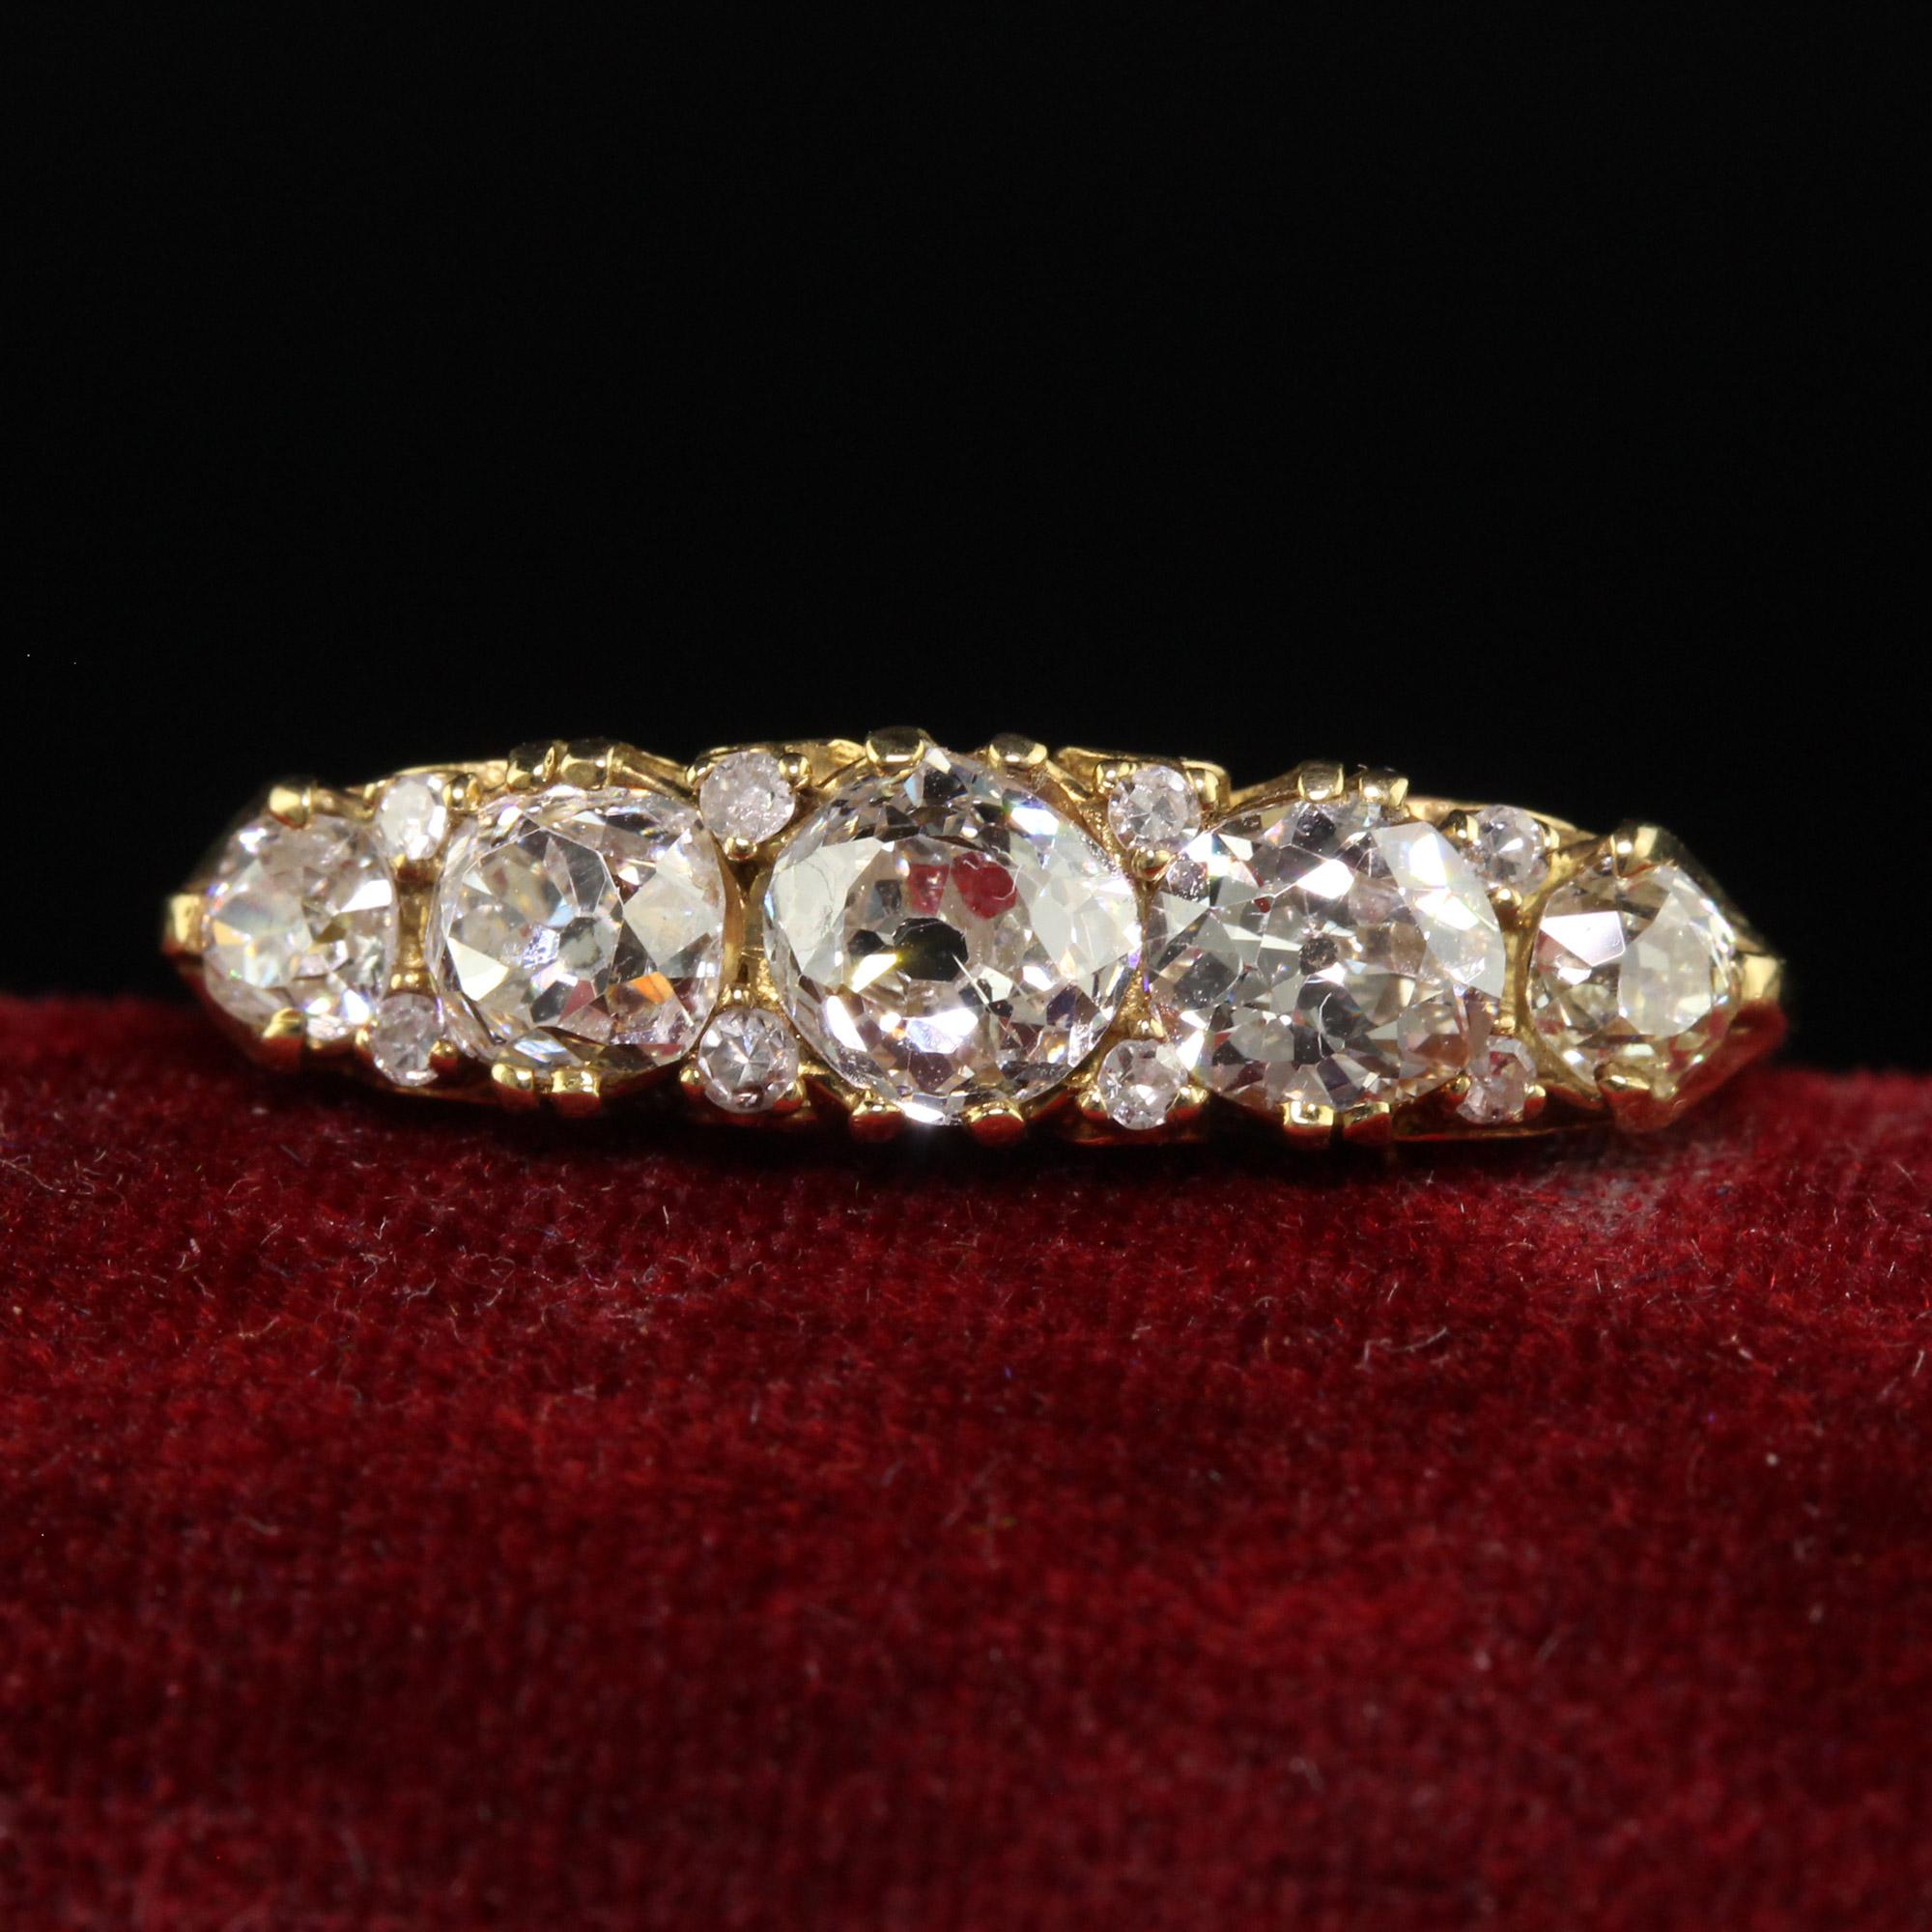 Schöne viktorianischen Stil 18K Gelbgold Old Mine Diamond Five Stone Ring. Dieser wunderschöne Diamantring im viktorianischen Stil aus alten Minen ist aus 18 Karat Gelbgold gefertigt. Der obere Teil des Rings besteht aus fünf großen Diamanten im